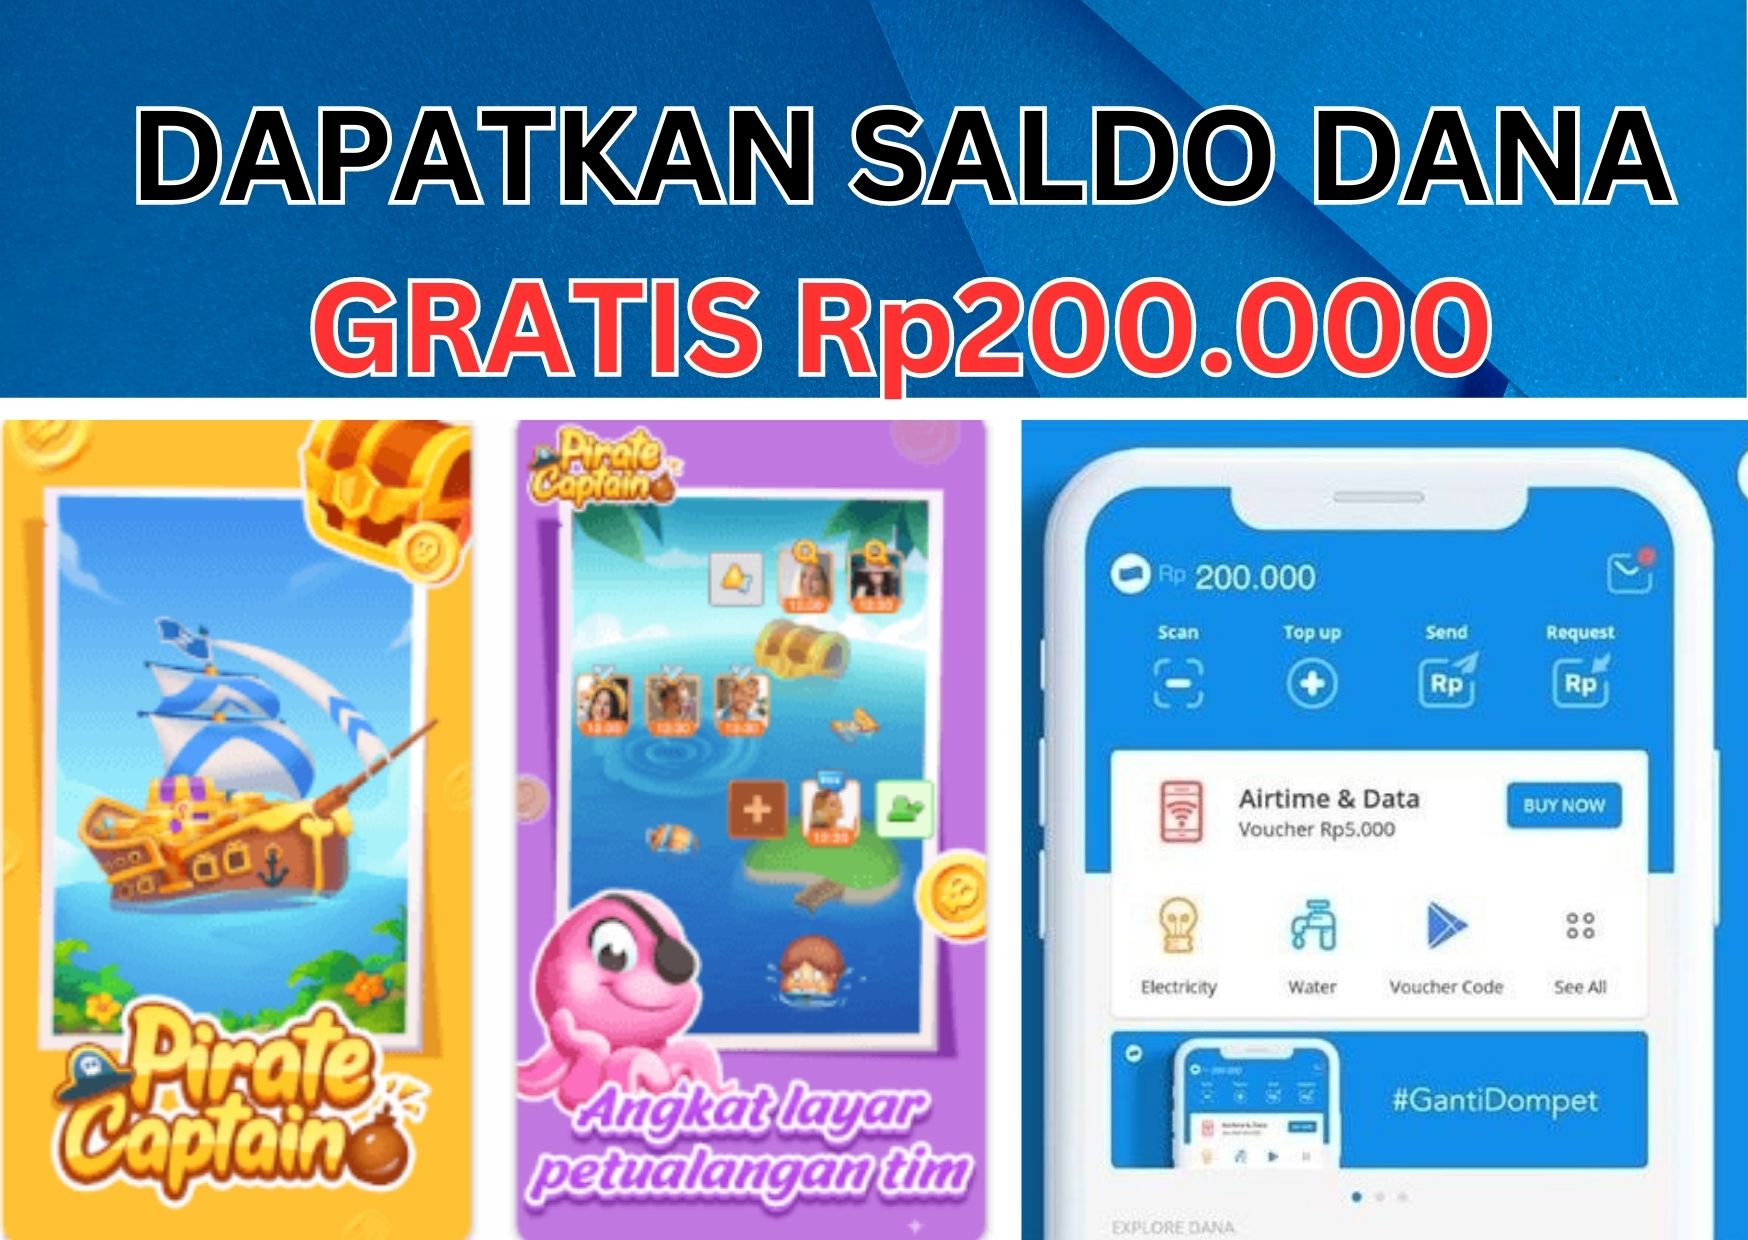 Terbukti Membayar! Dapatkan Saldo DANA Gratis Rp200.000 dari Aplikasi Pirate Captain